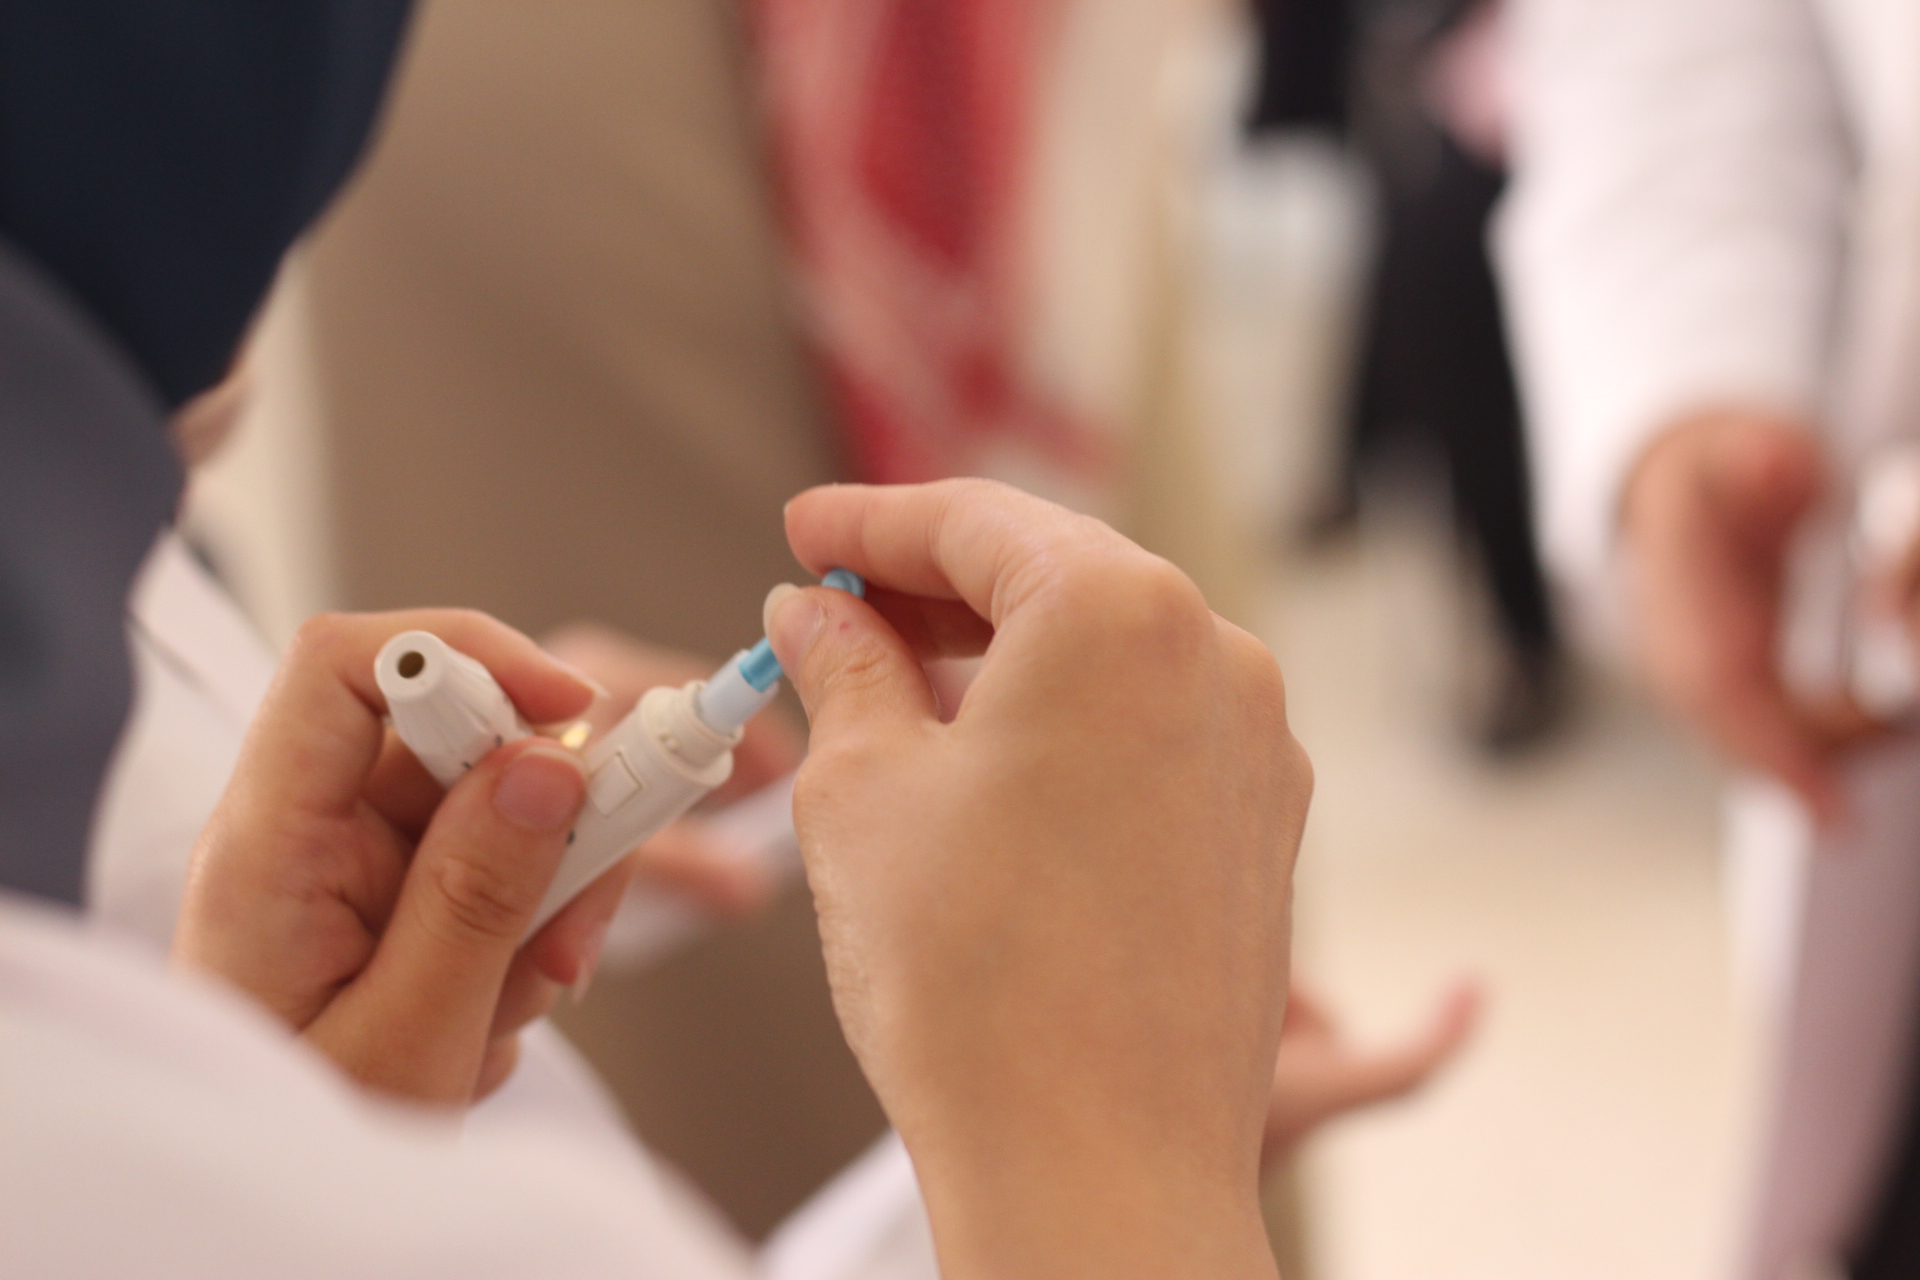 العون الطبي للفلسطينيين تقيم يوم طبي مجاني بالتعاون مع مؤسسة يان وجامعة الشرق الأوسط